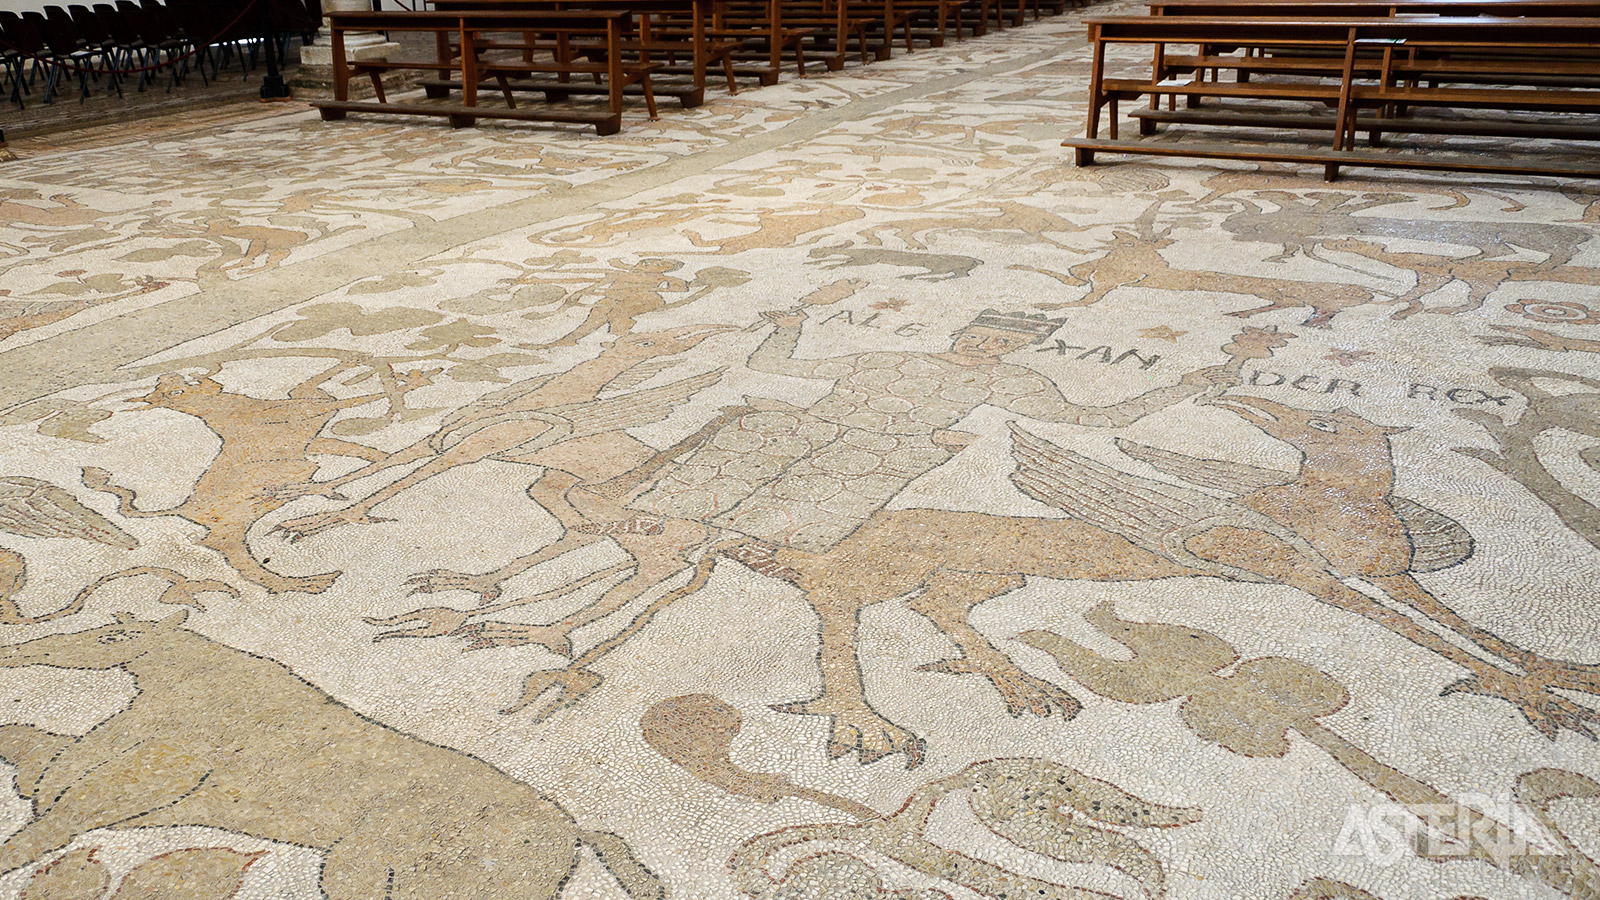 De Kathedraal van Otranto of de Annunciatiekathedraal heeft een immense vloermozaïek van 28m bij 54m